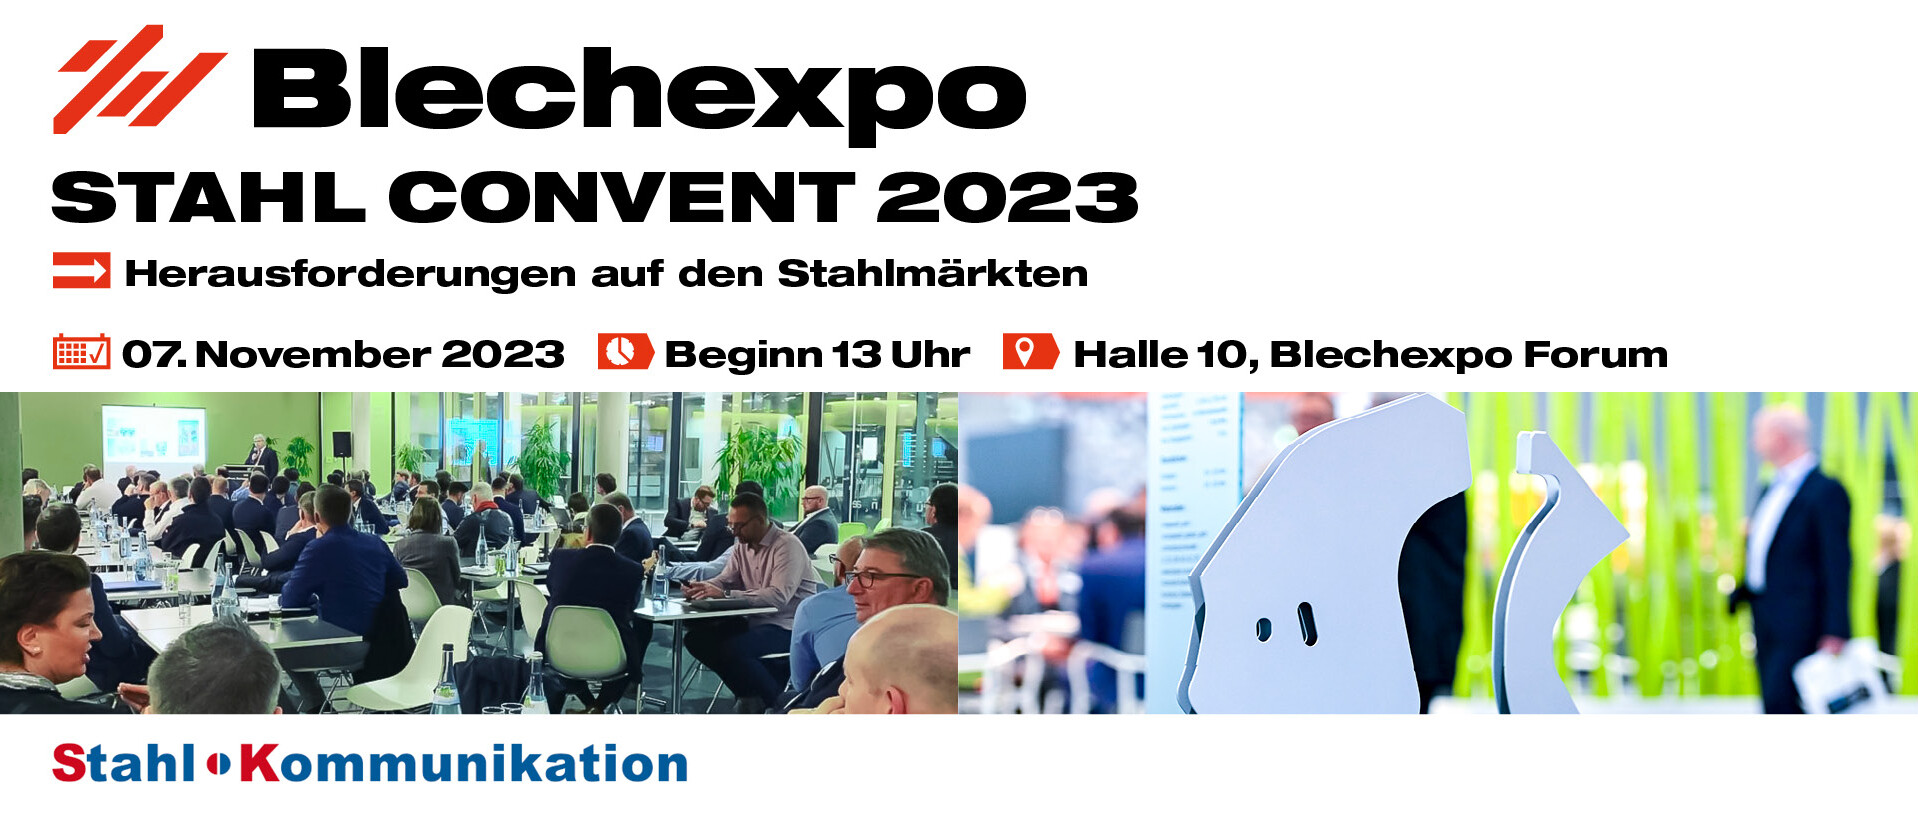 Schweisstec Internationale Fachmesse für Fügetechnologie Blechexpo Stahlkonvent 2023 1920x822 website 01 de uai 1918x822 1